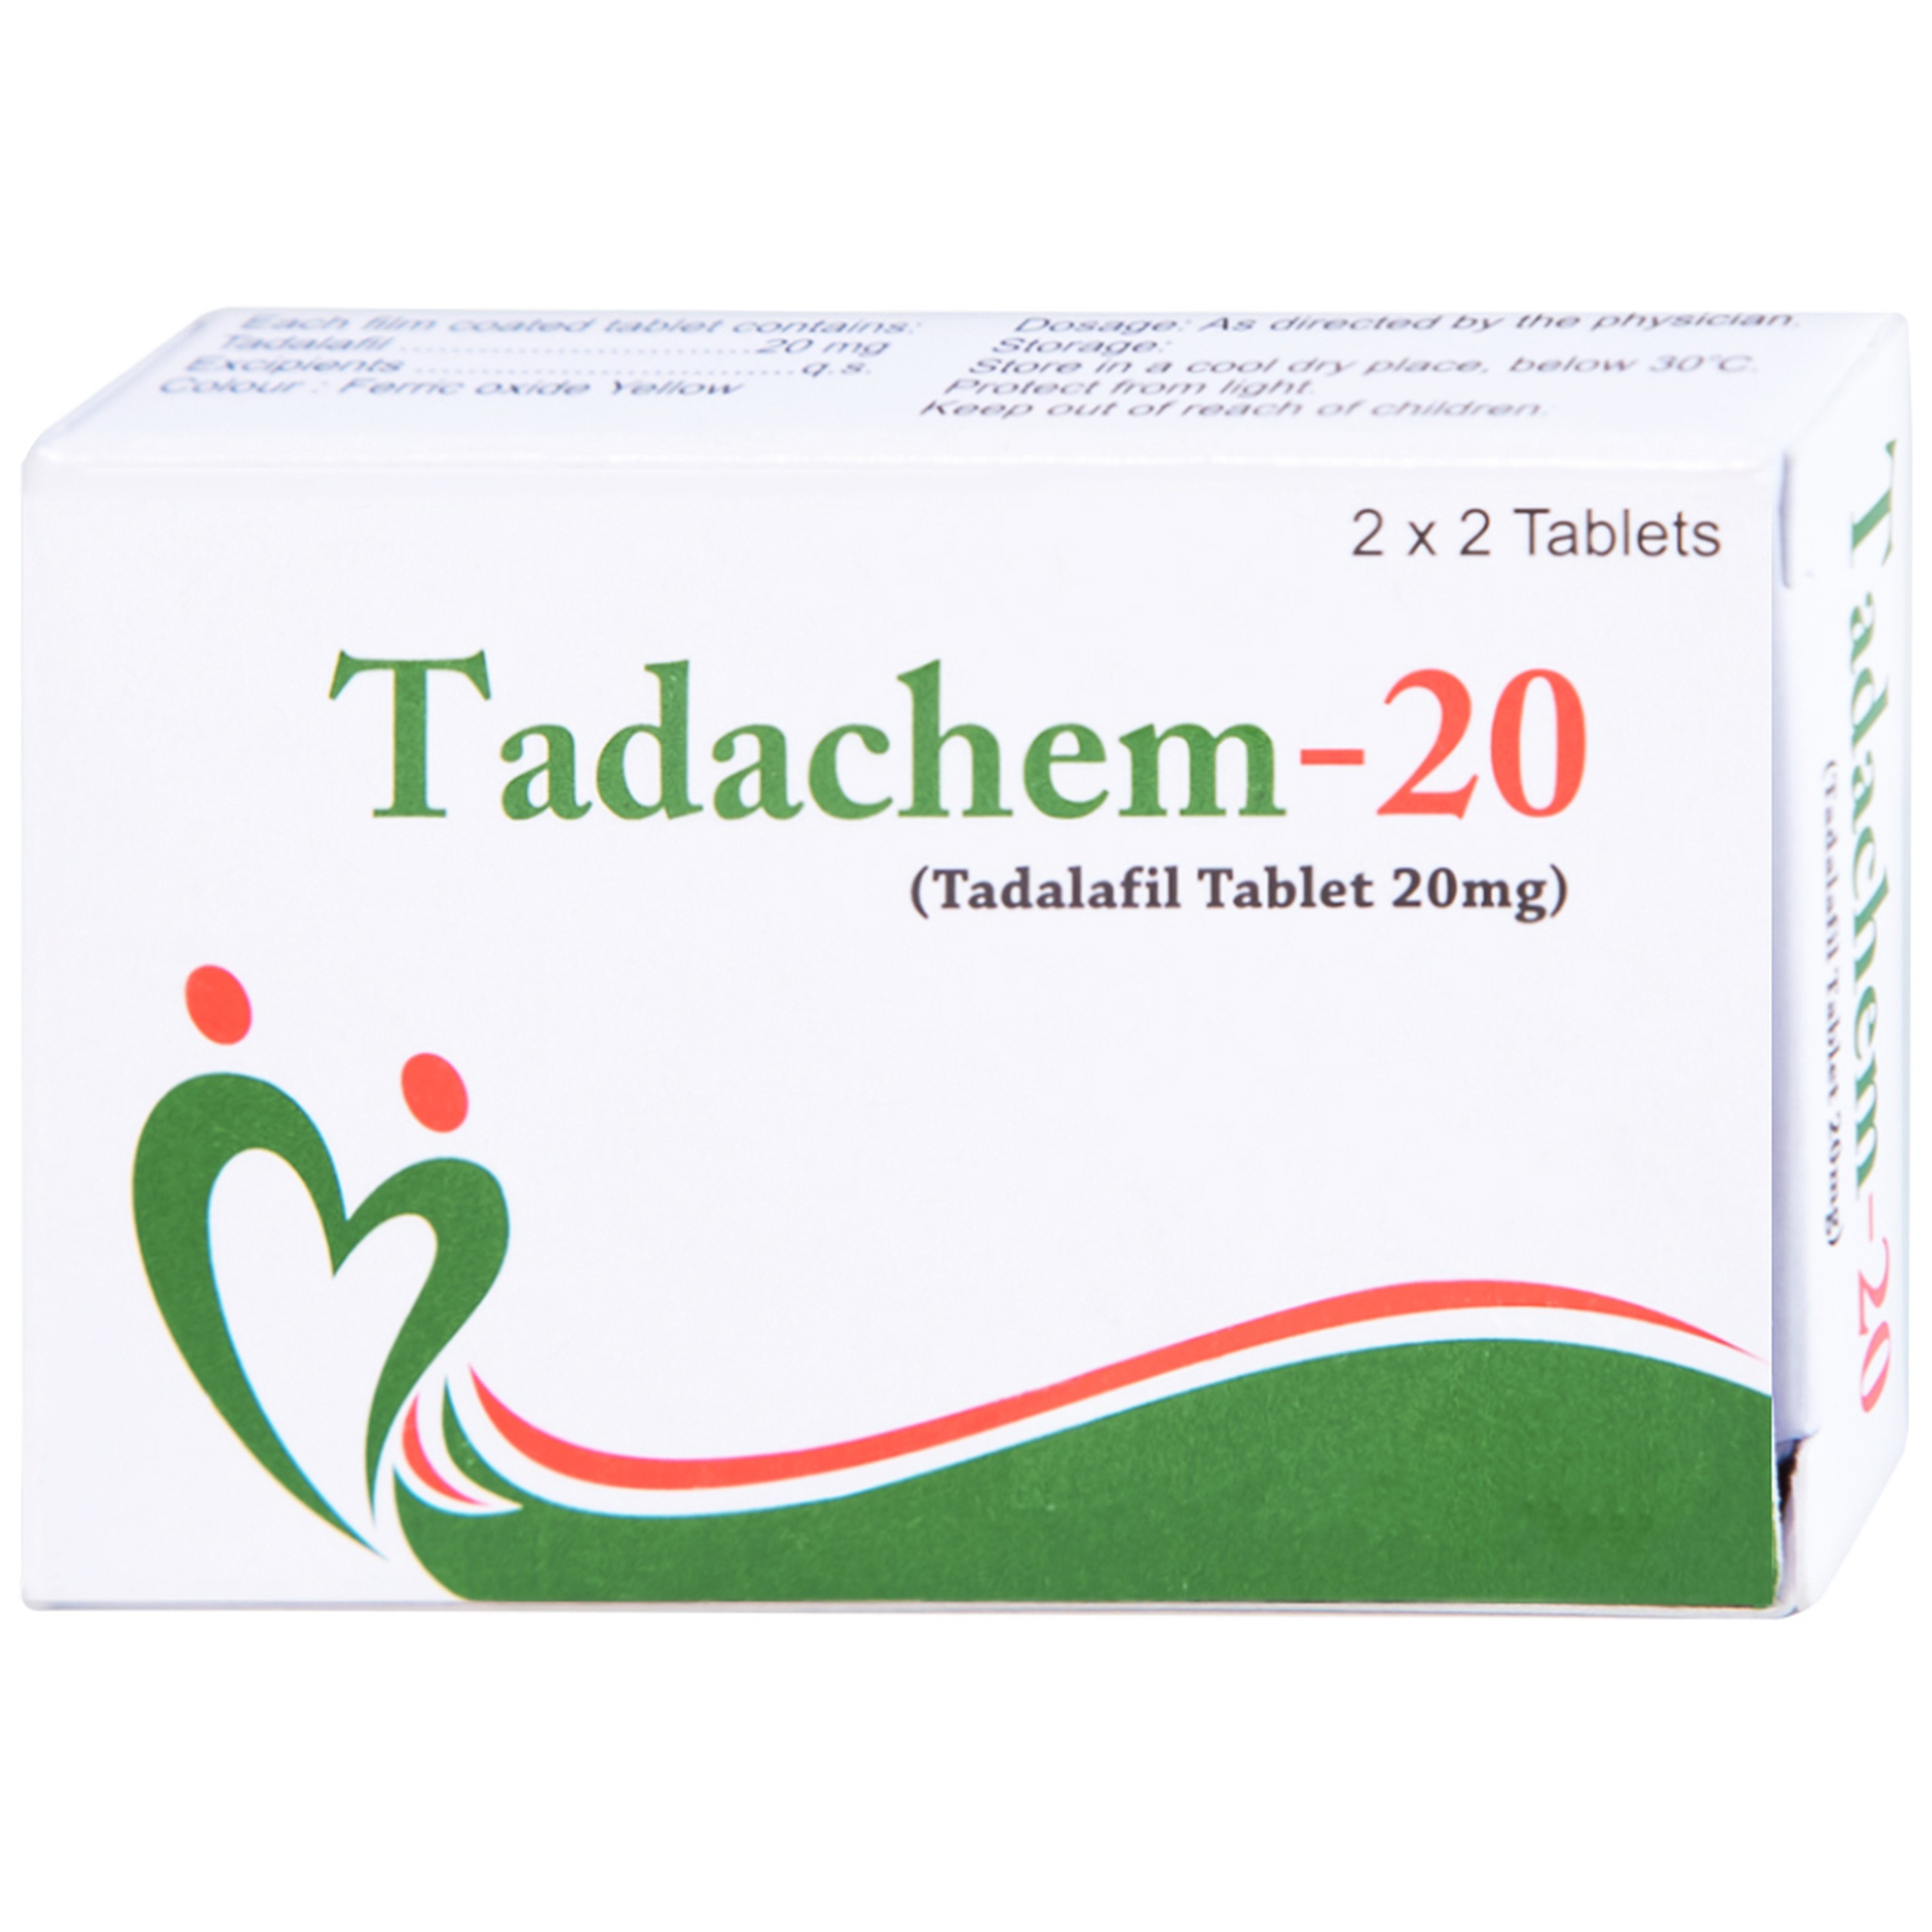 Thuốc Tadachem-20 Aurochem điều trị rối loạn cương dương (2 vỉ x 2 viên)